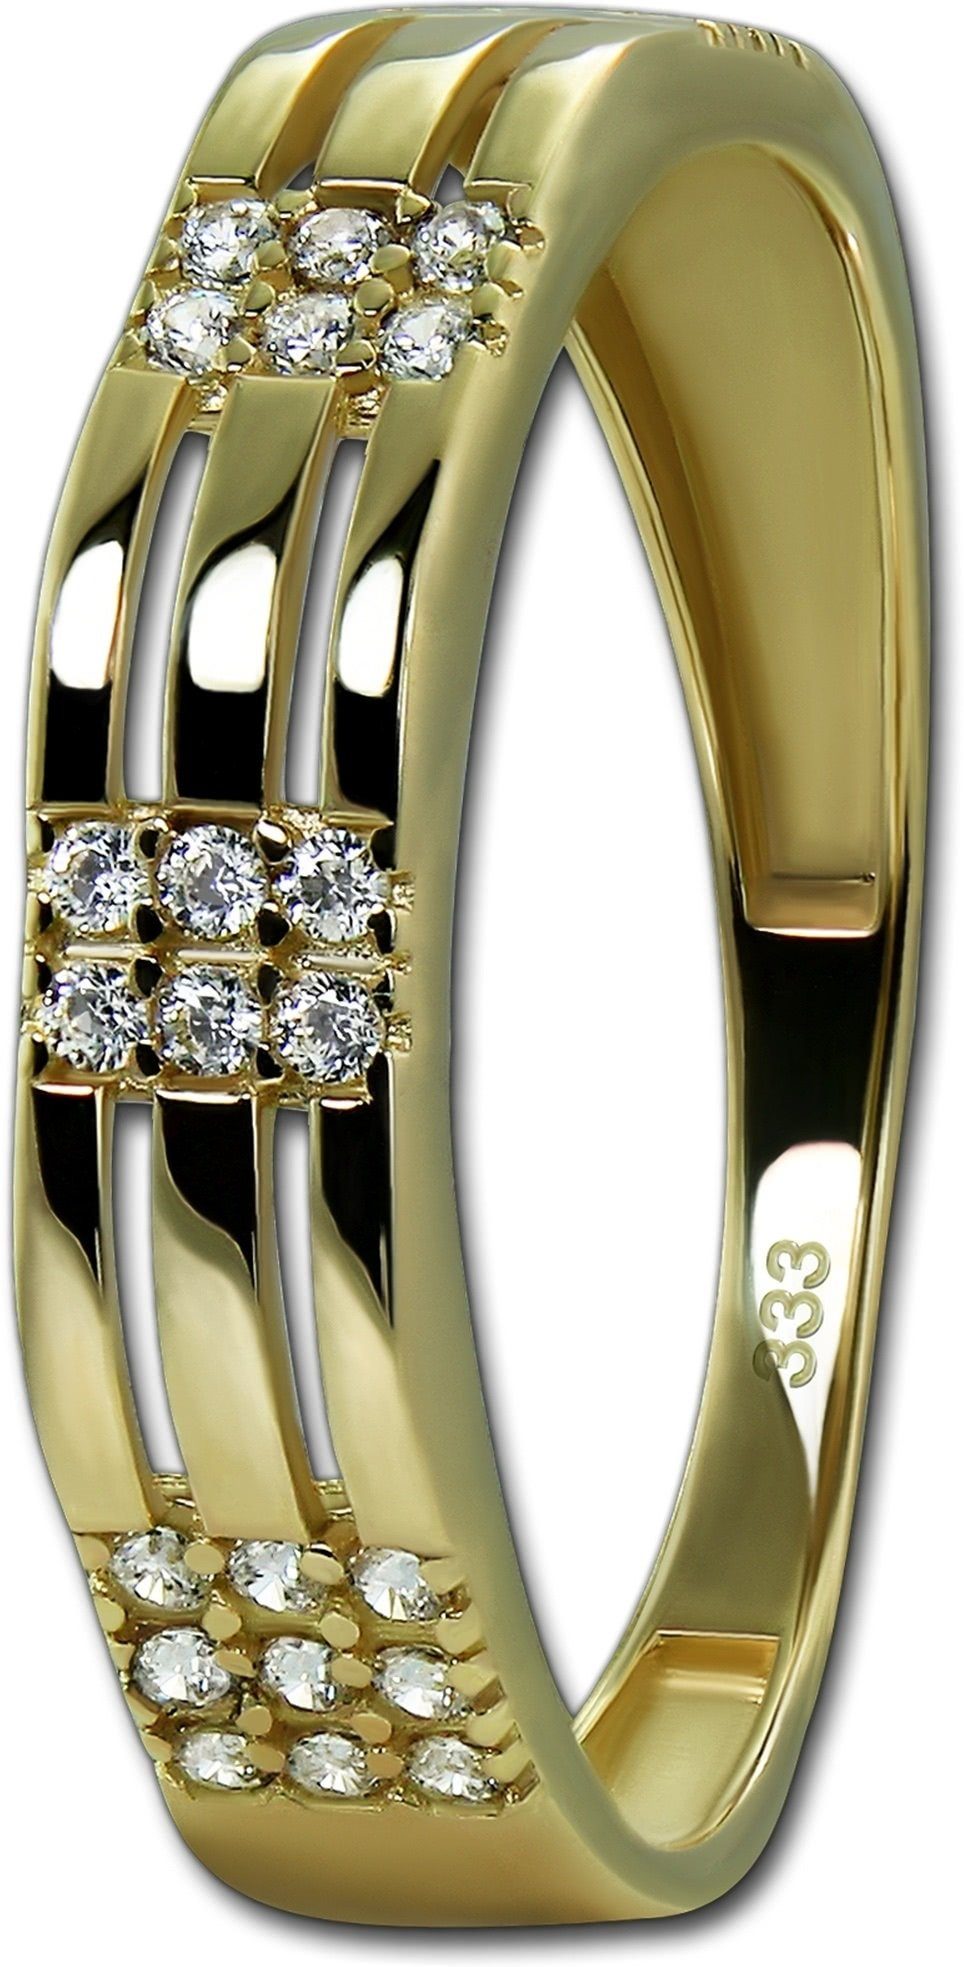 (Fingerring), gold, GoldDream Gold Sparkle Damen 333er Ring Gr.56 Ring Sparkle GoldDream weiß Gelbgold Echtgold, Goldring